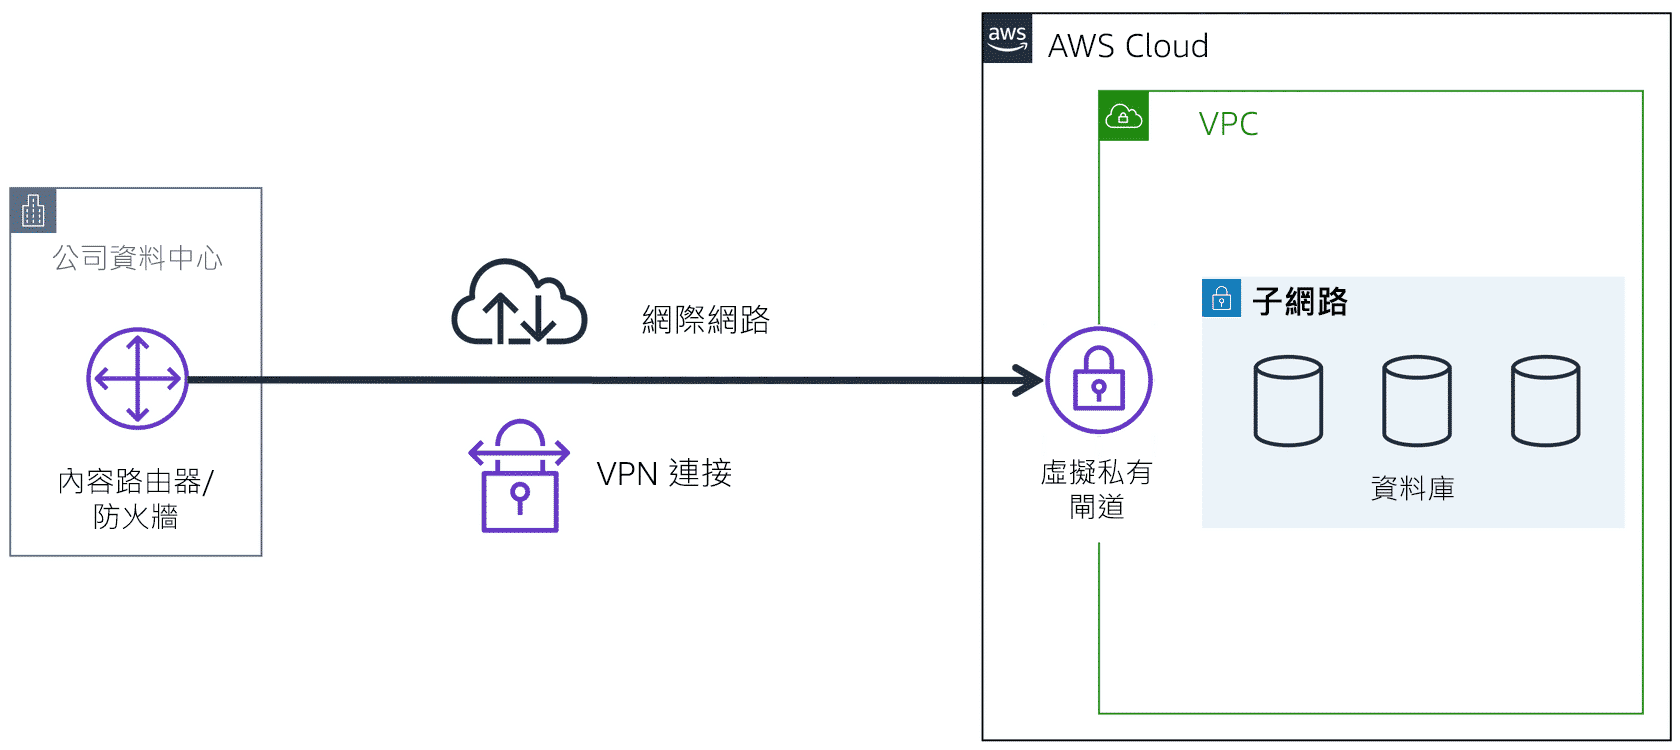 虛擬私有閘道可讓您在 VPC 和私人網路 (例如內部部署資料中心或企業內部網路) 之間建立虛擬私人網路 (VPN) 連線。流量必須來自核准的網路，虛擬私有閘道才會允許流量進入 VPC。